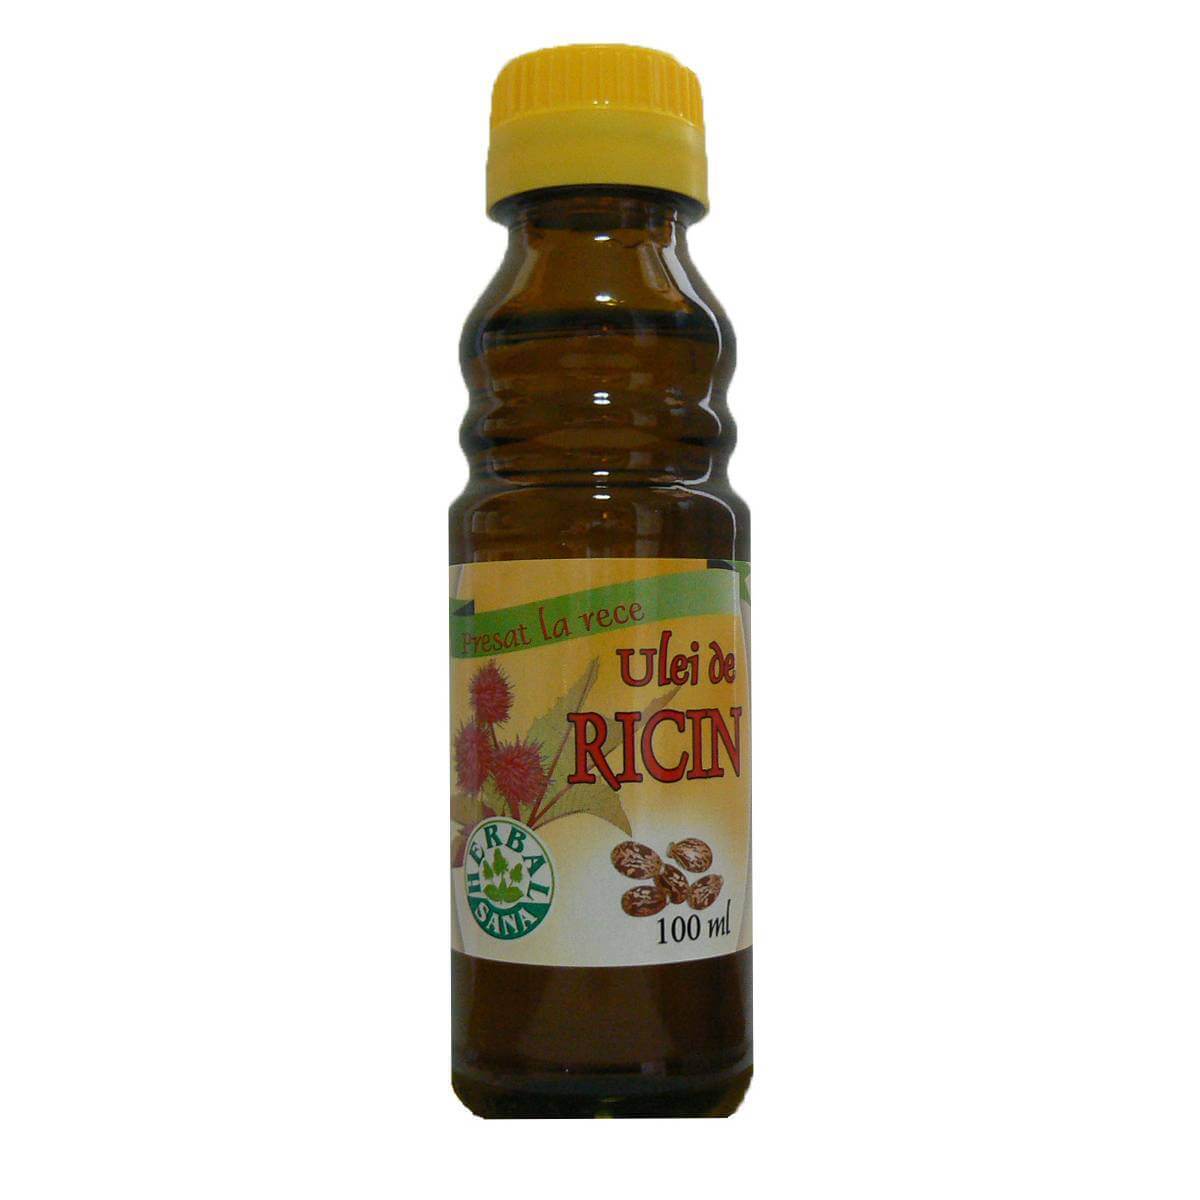 in cat timp isi face efectul uleiul de ricin Ulei de Ricin, 100 ml, Herbavit